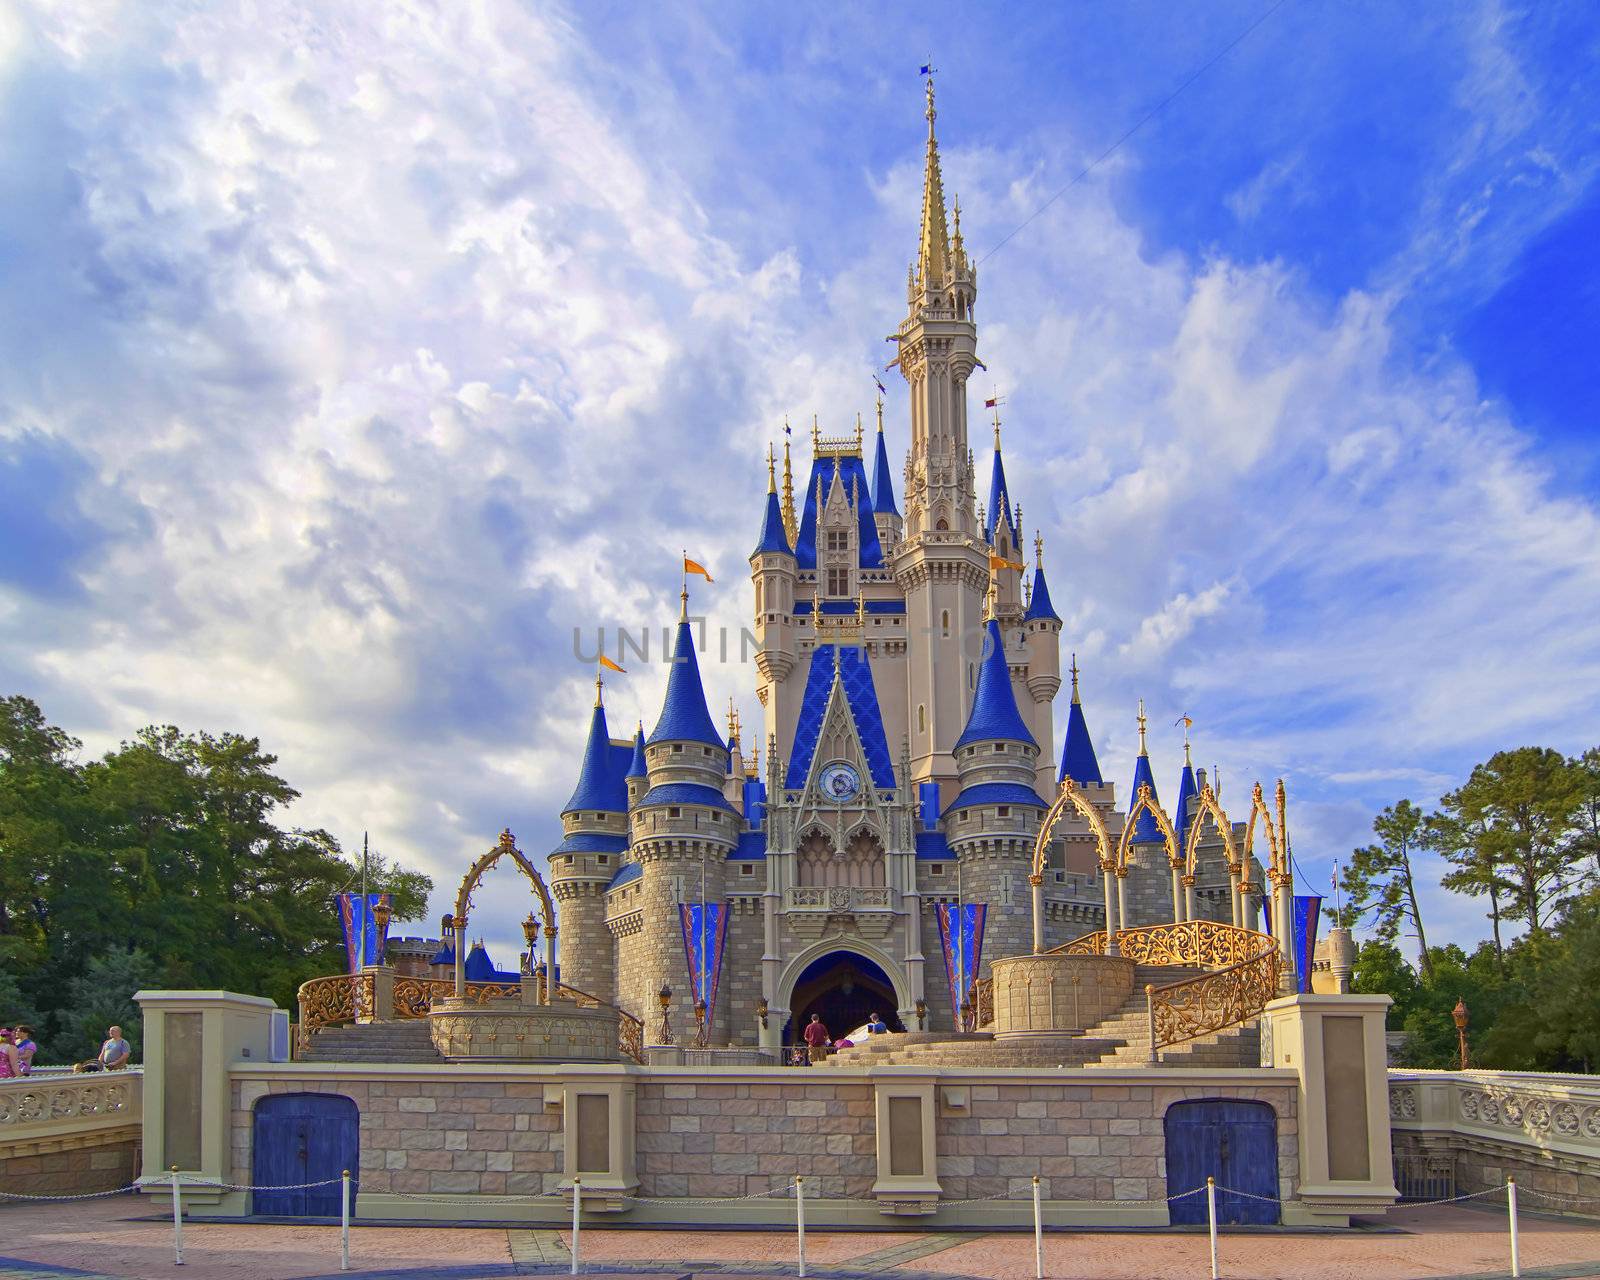 Cinderella's castle in Magic kingdom, Disneyworld, Orlando